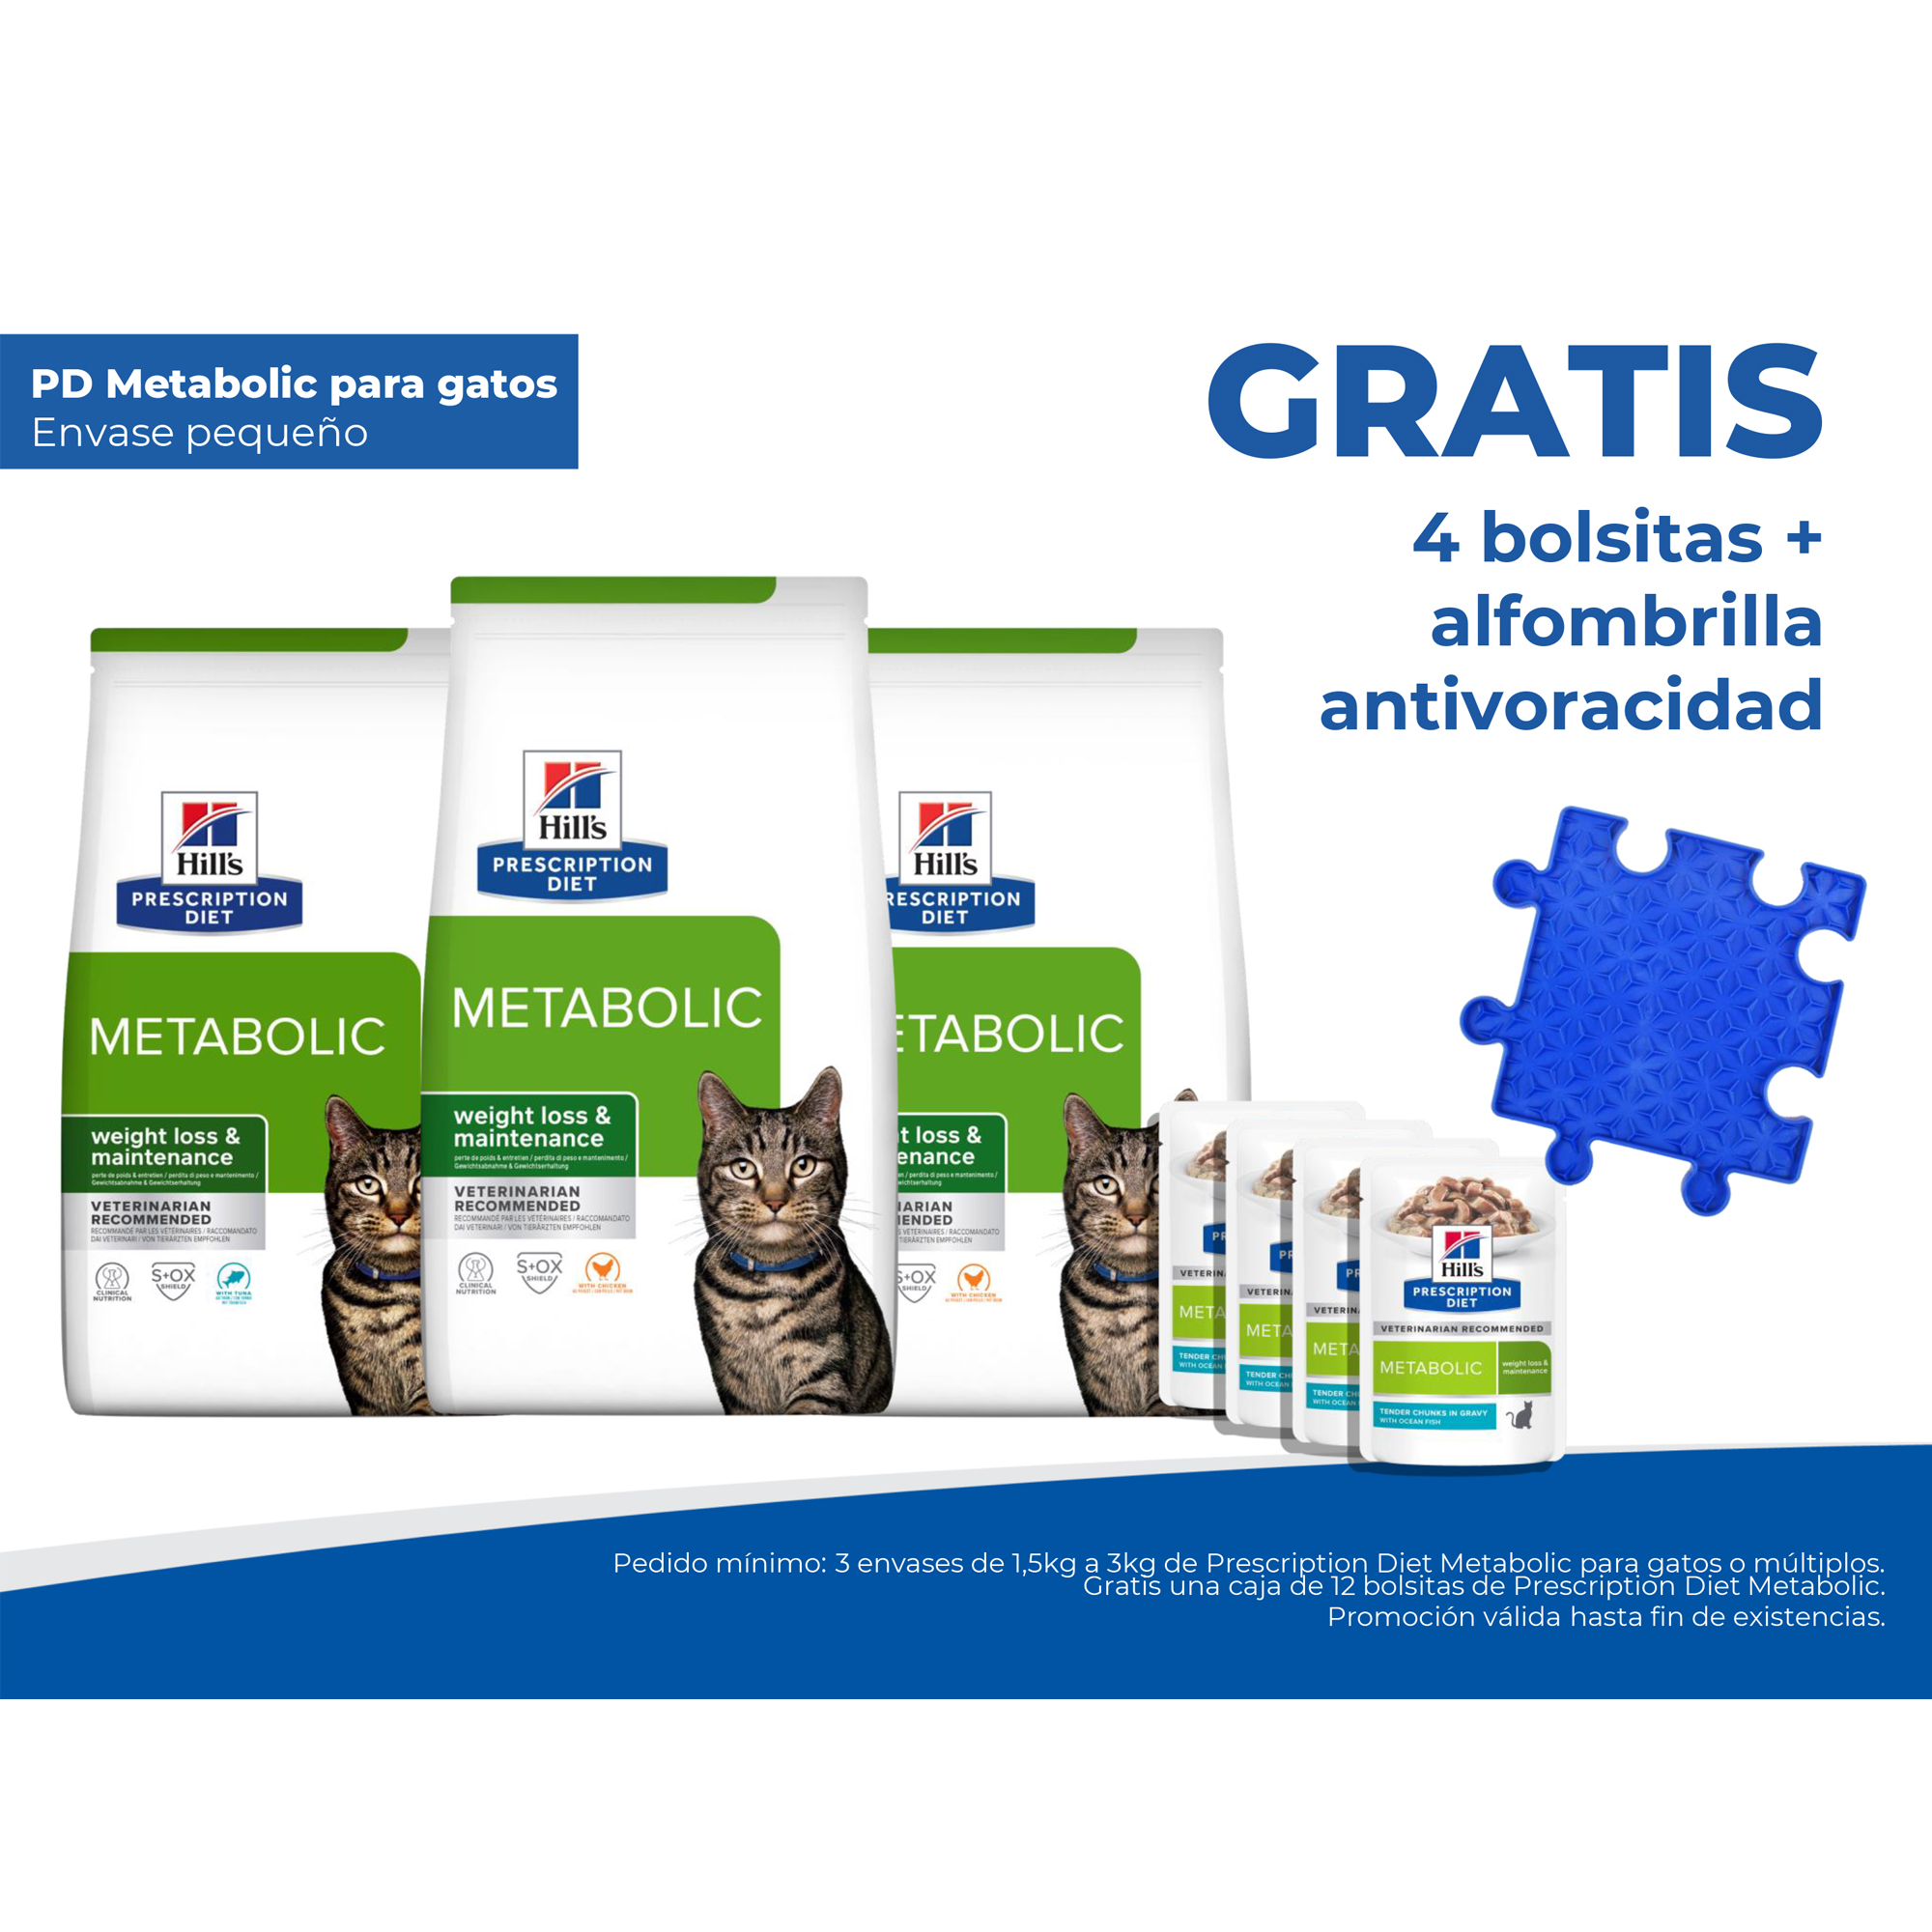 GRATIS 4 bolsitas + alfombrilla antivoracidad